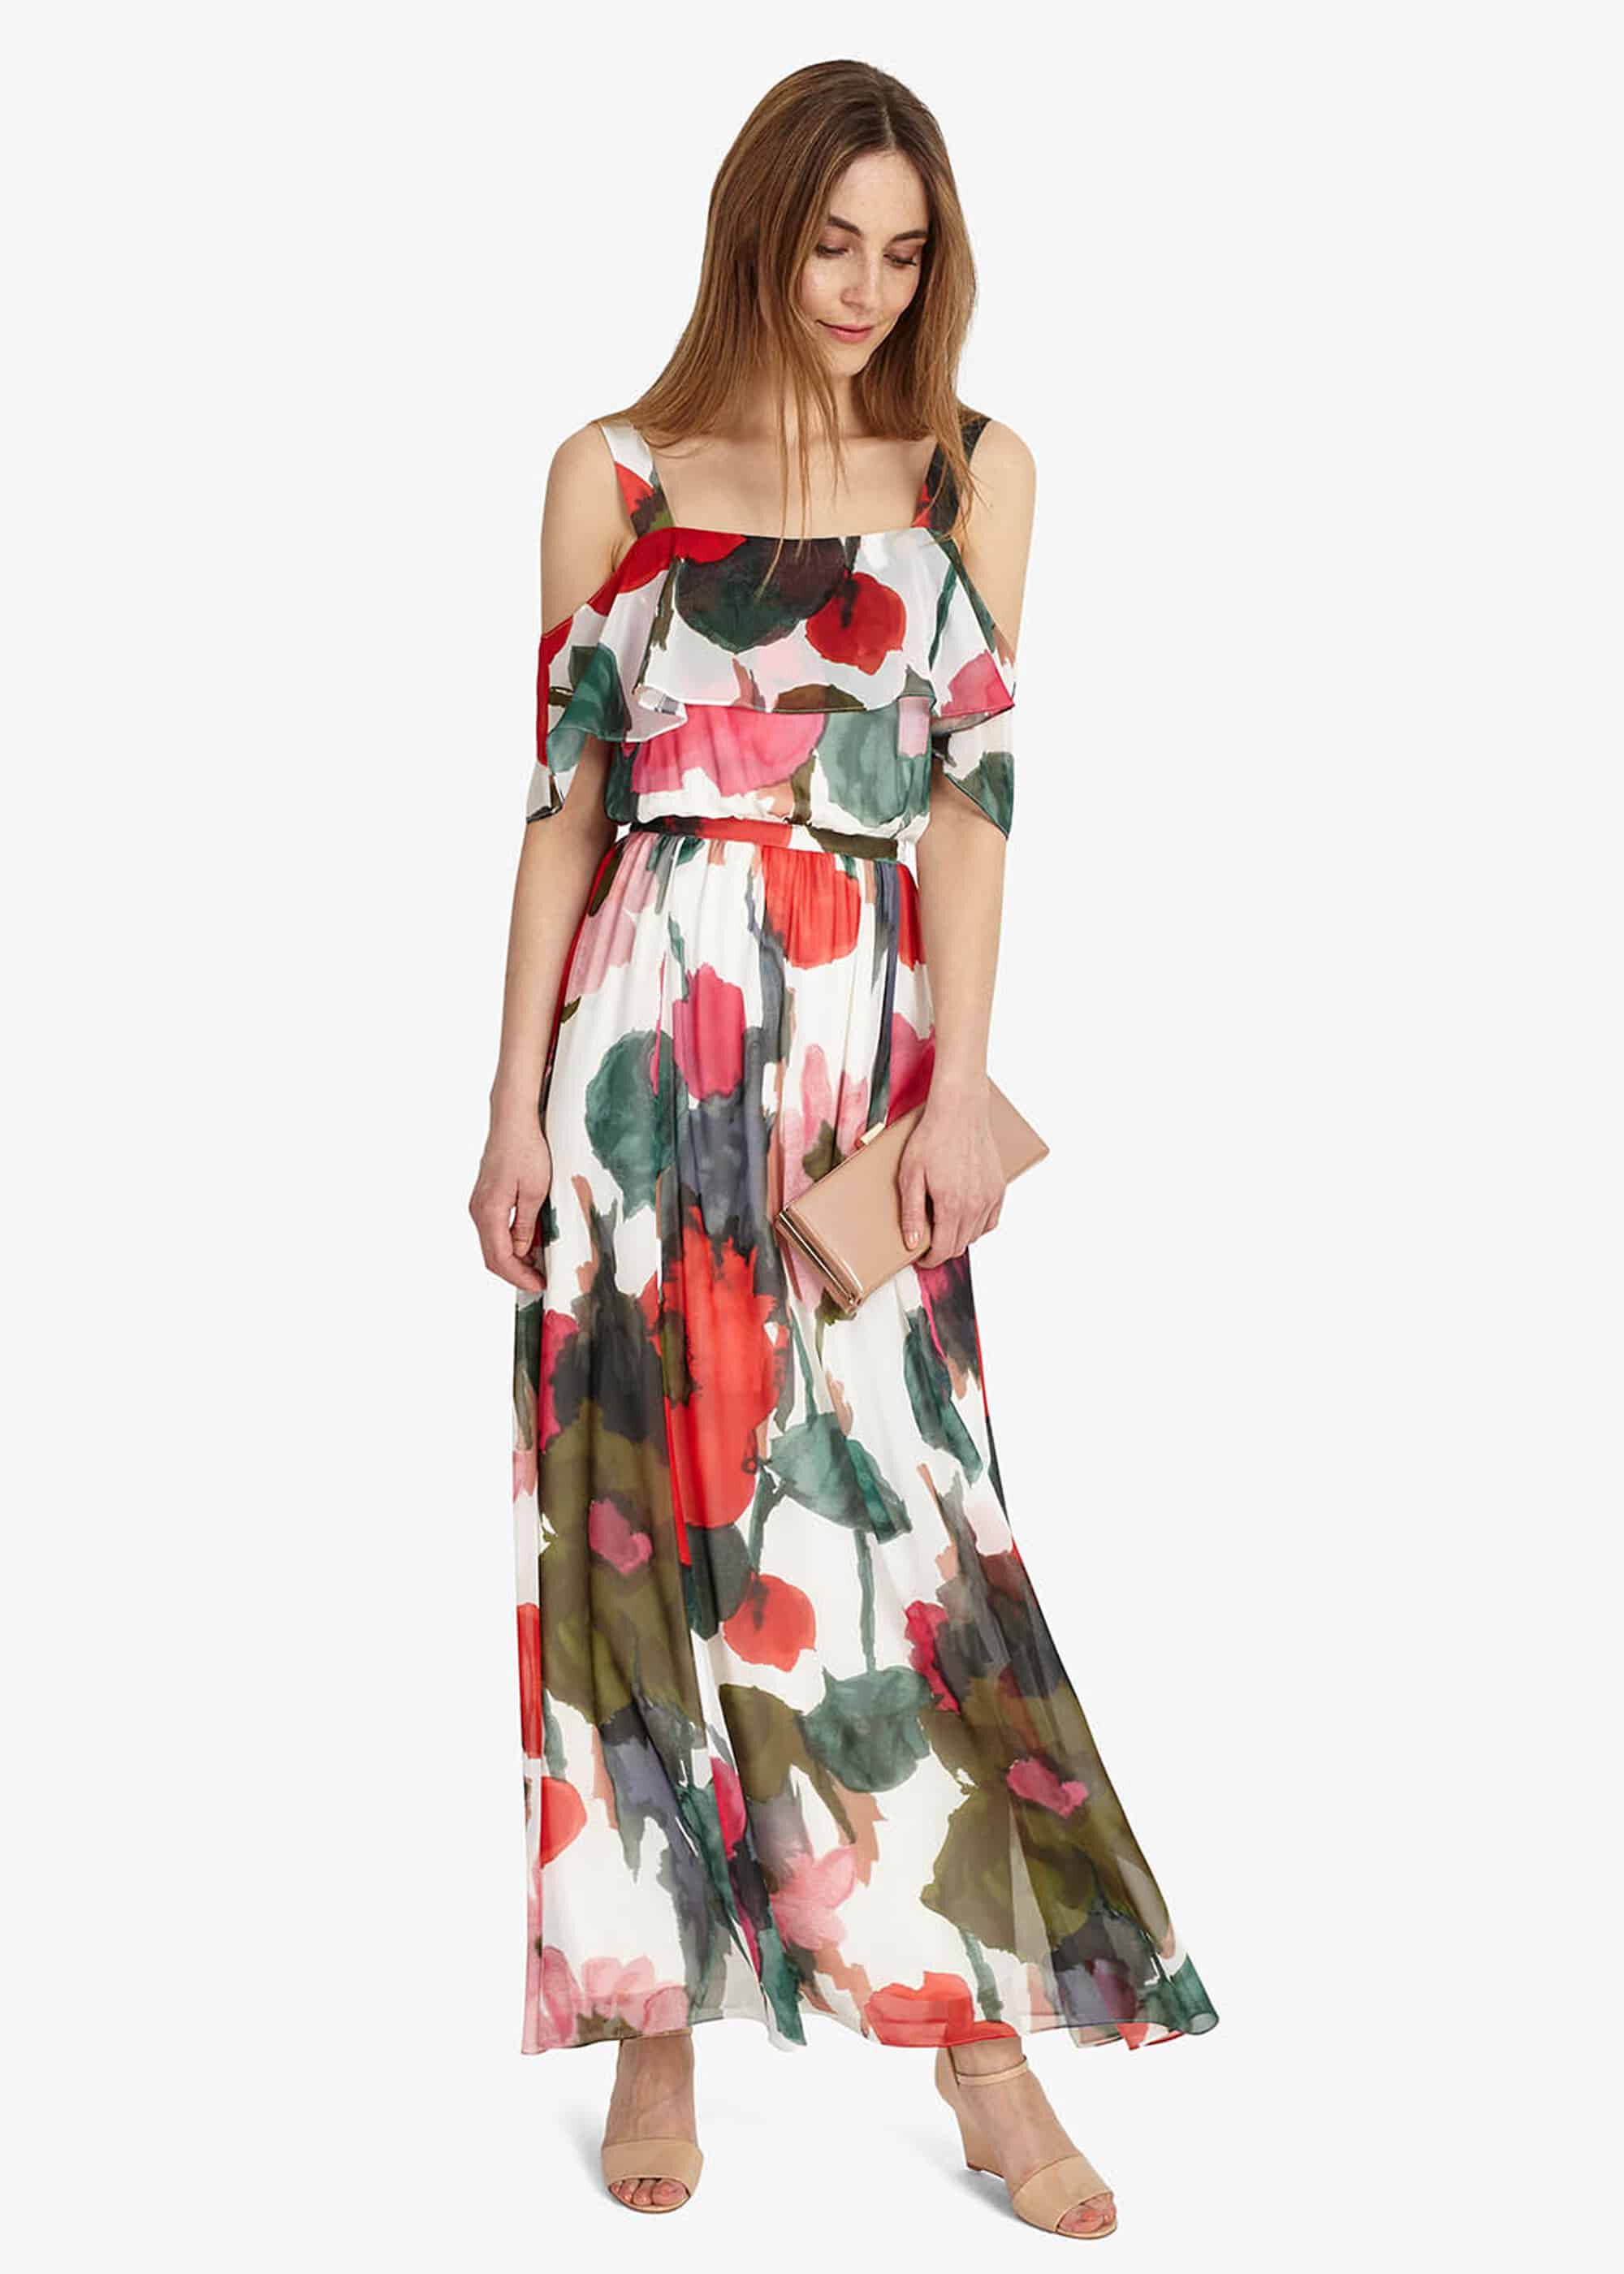 heidelberg fancy dress